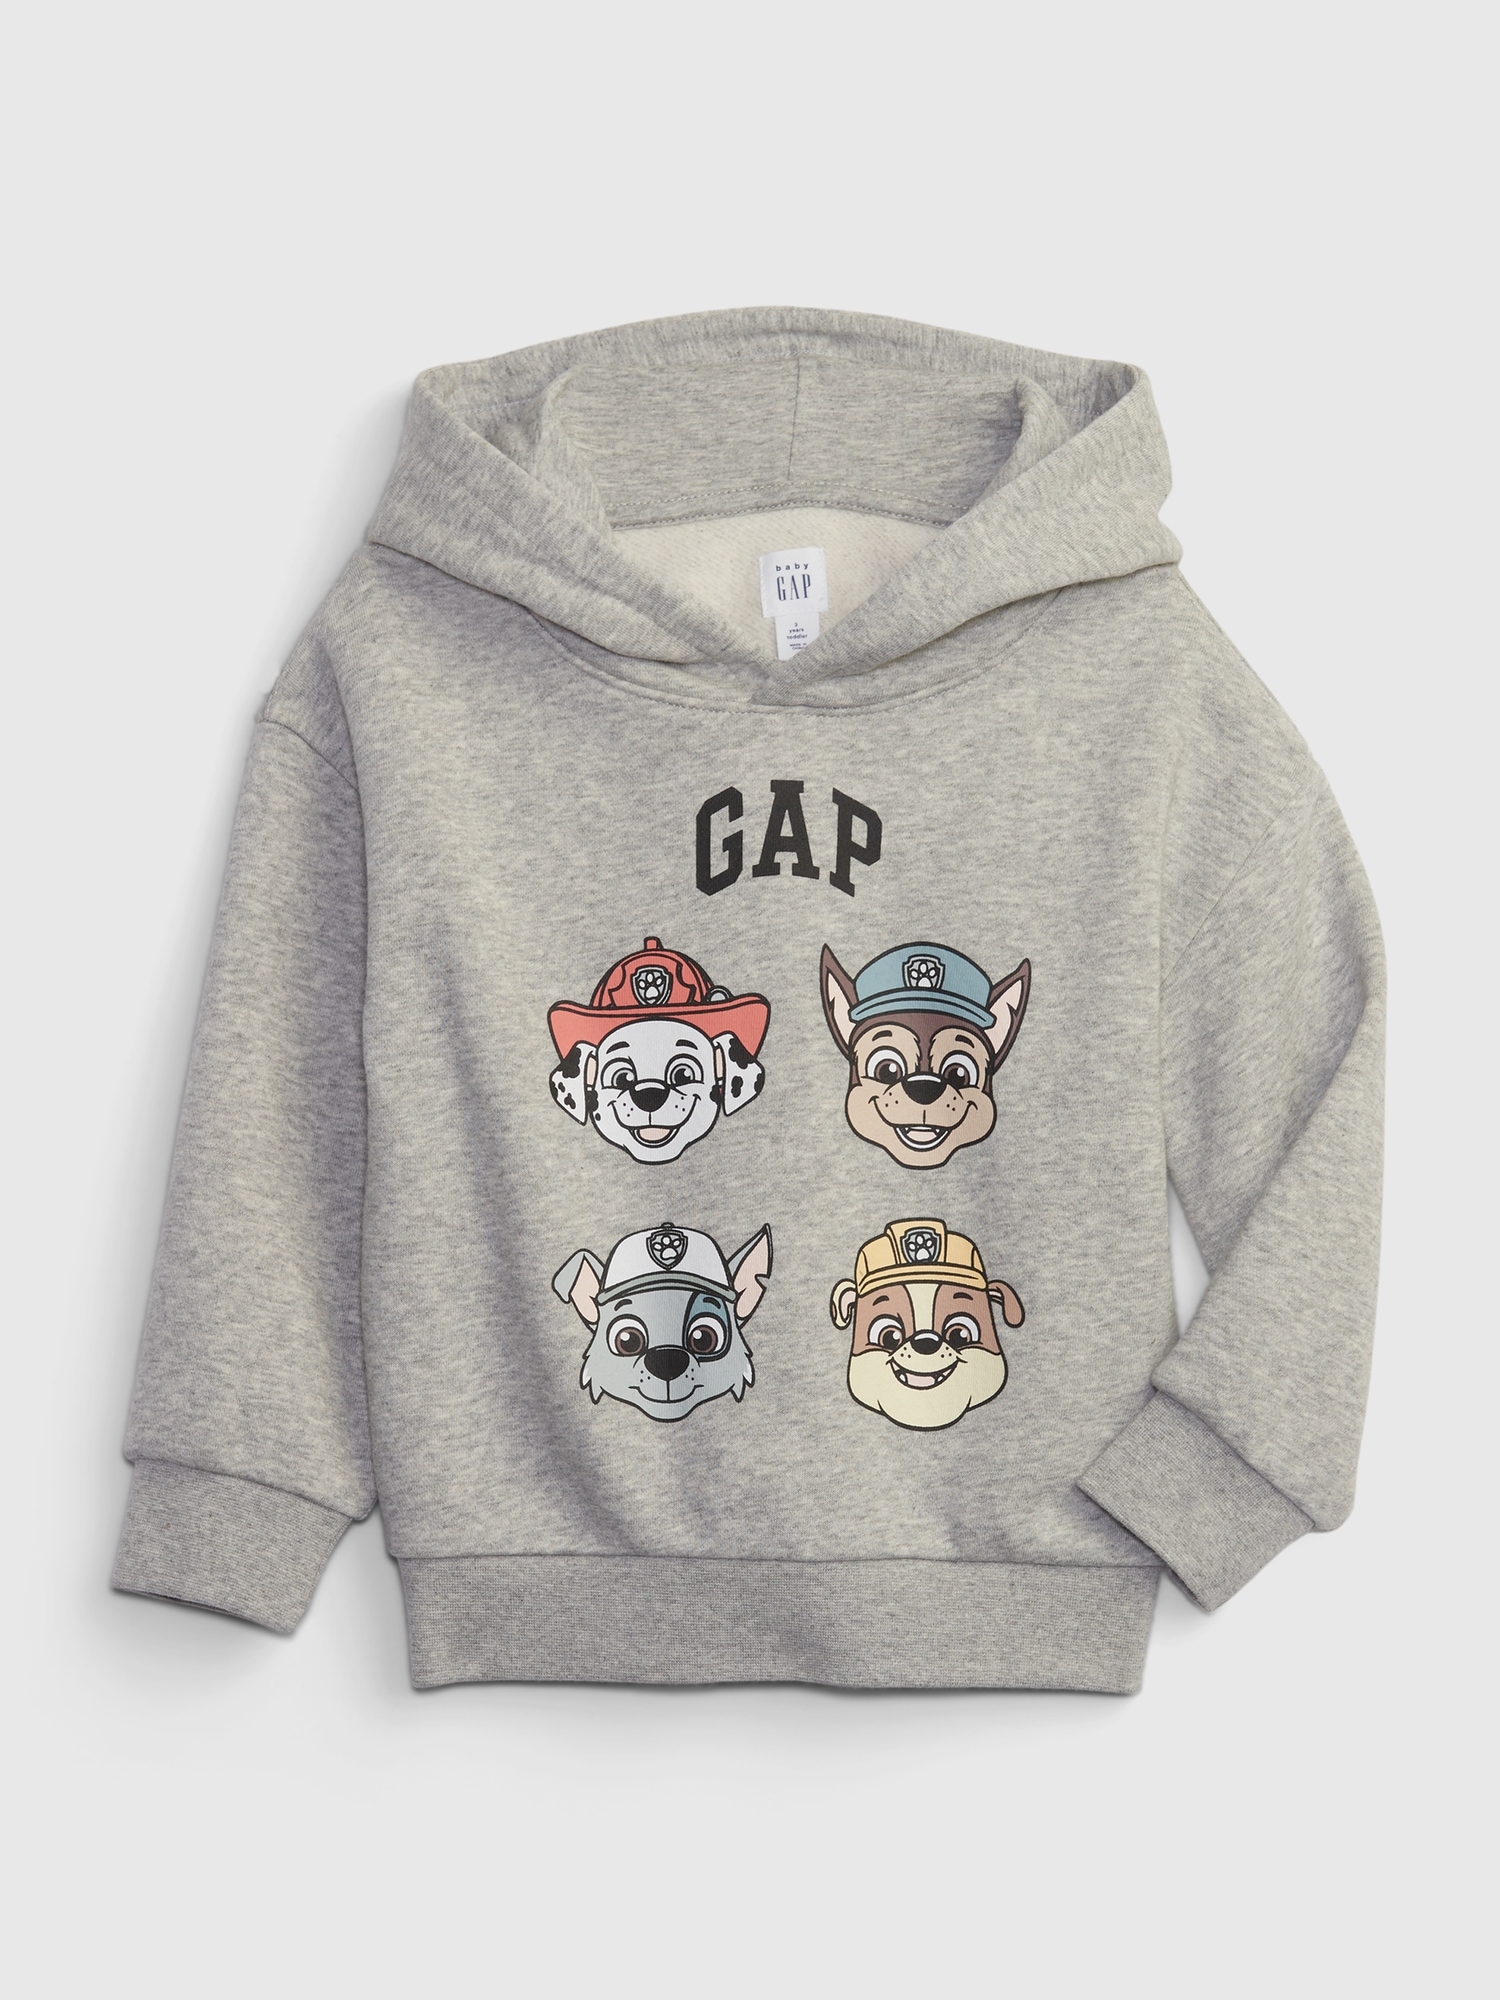 Graphic Gap Toddler Sweatshirt Patrol Paw |